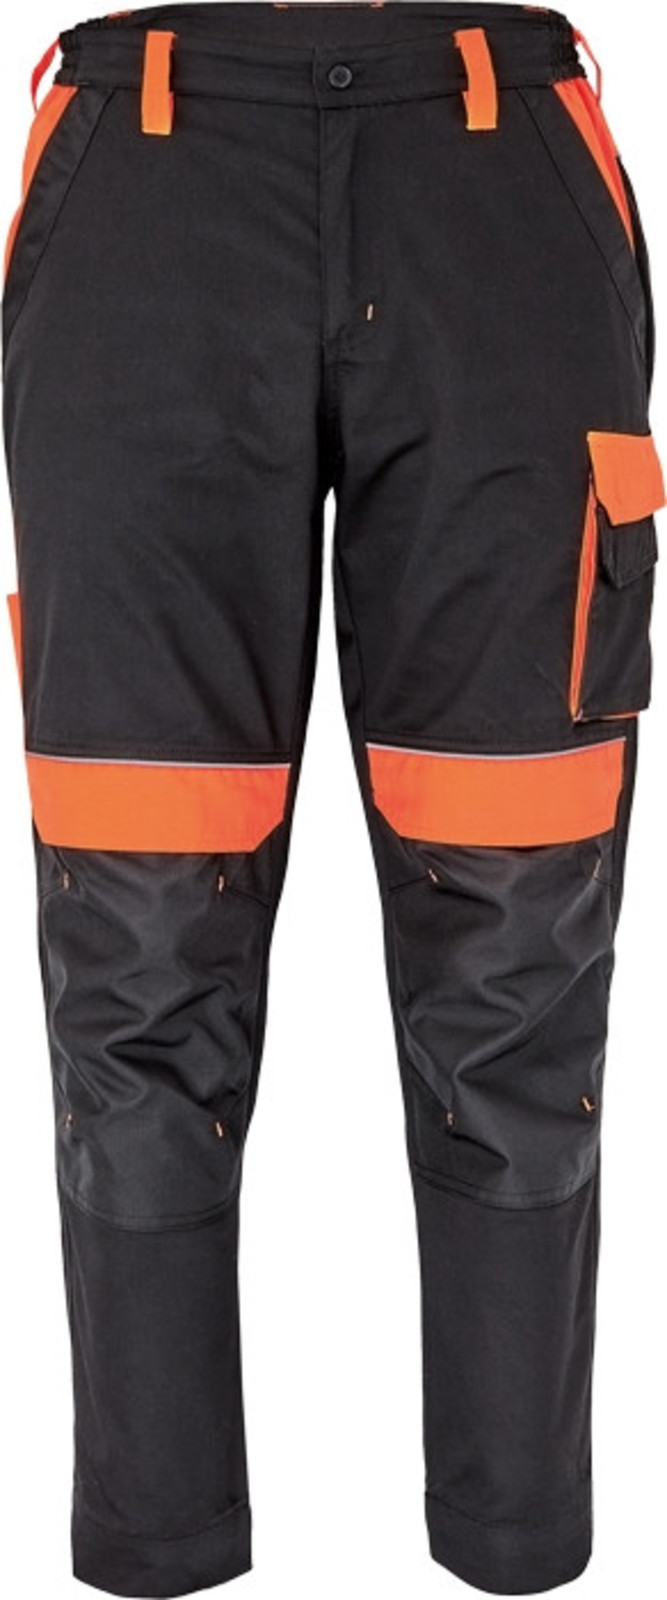 Pracovné nohavice Cerva Max Vivo pánske  - veľkosť: 58, farba: čierna/oranžová